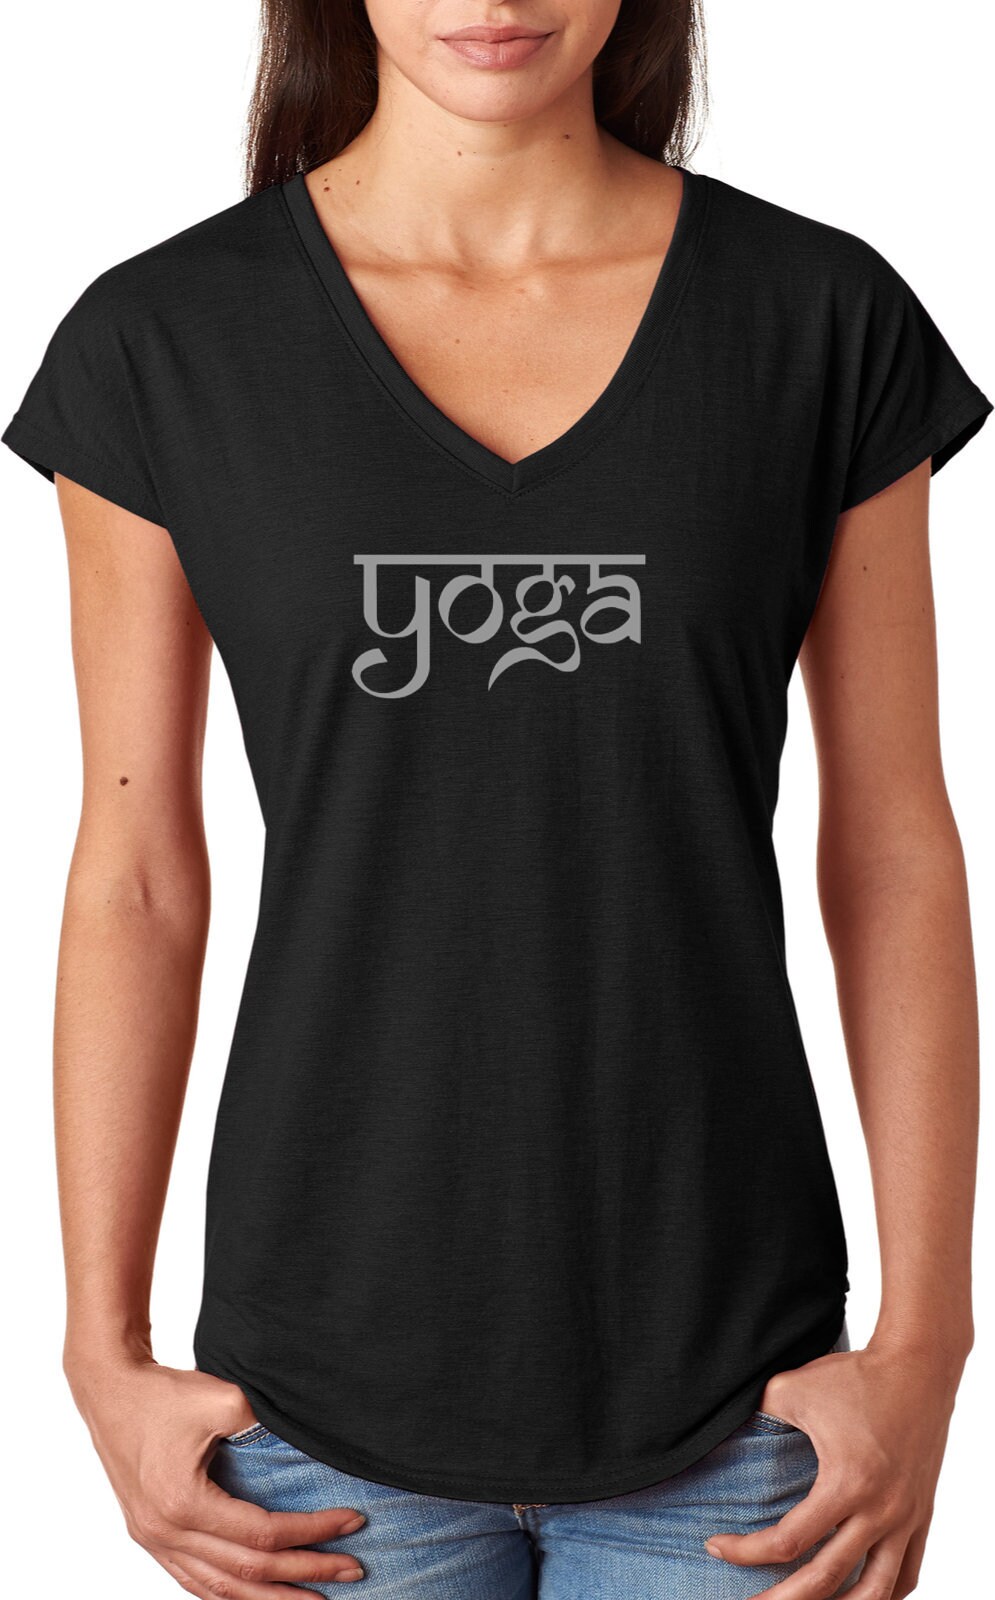 Sanskrit Yoga Text Ladies Tri Blend V-Neck Tee Shirt = Sanskrit-6750Vl